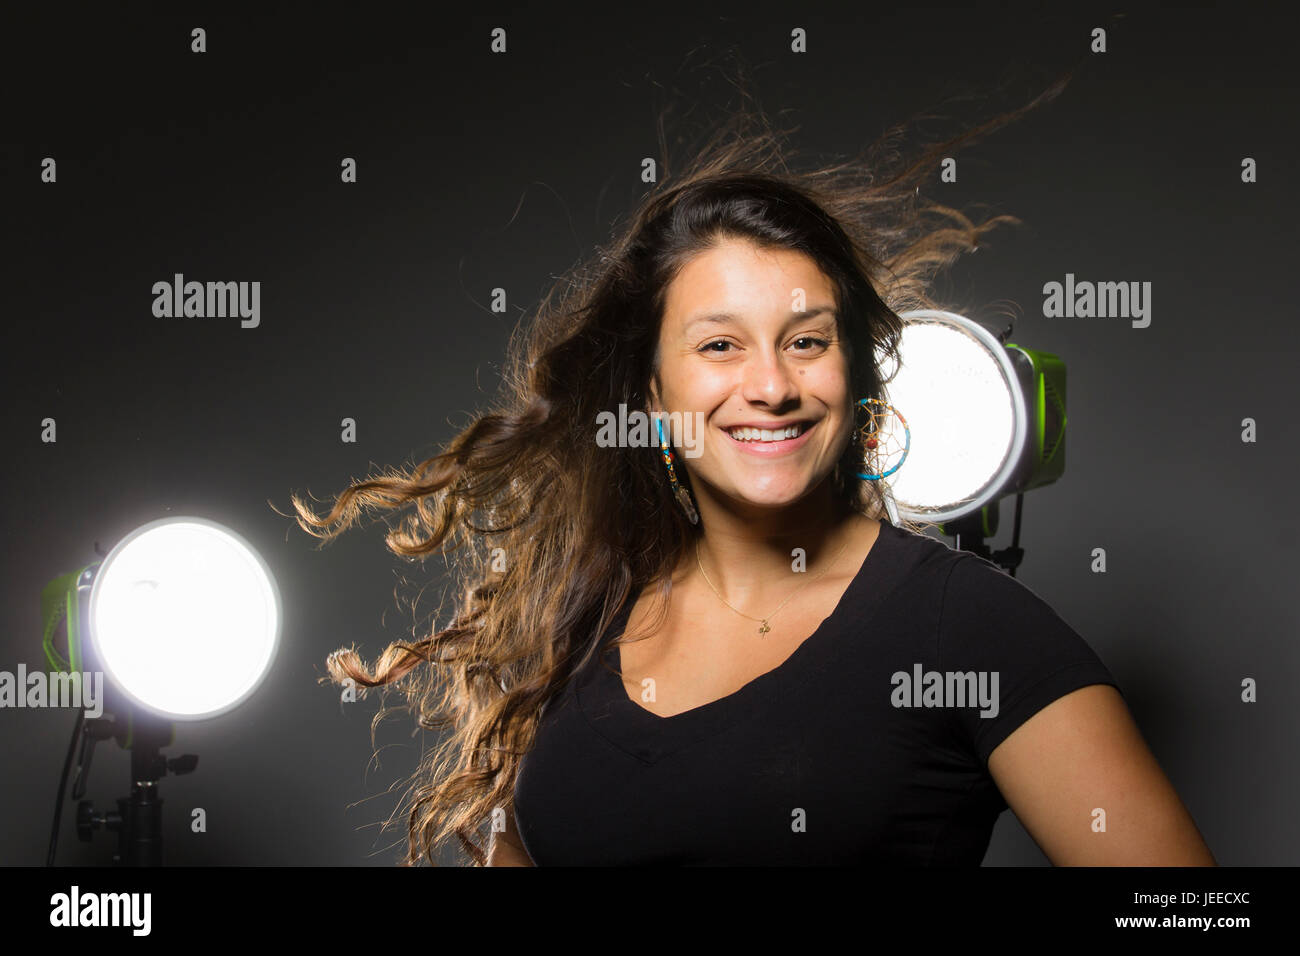 Giovani razza mista donna in tre quarti profilo sorrisi e capovolge i suoi capelli con luci dello studio dietro e uno sfondo scuro Foto Stock